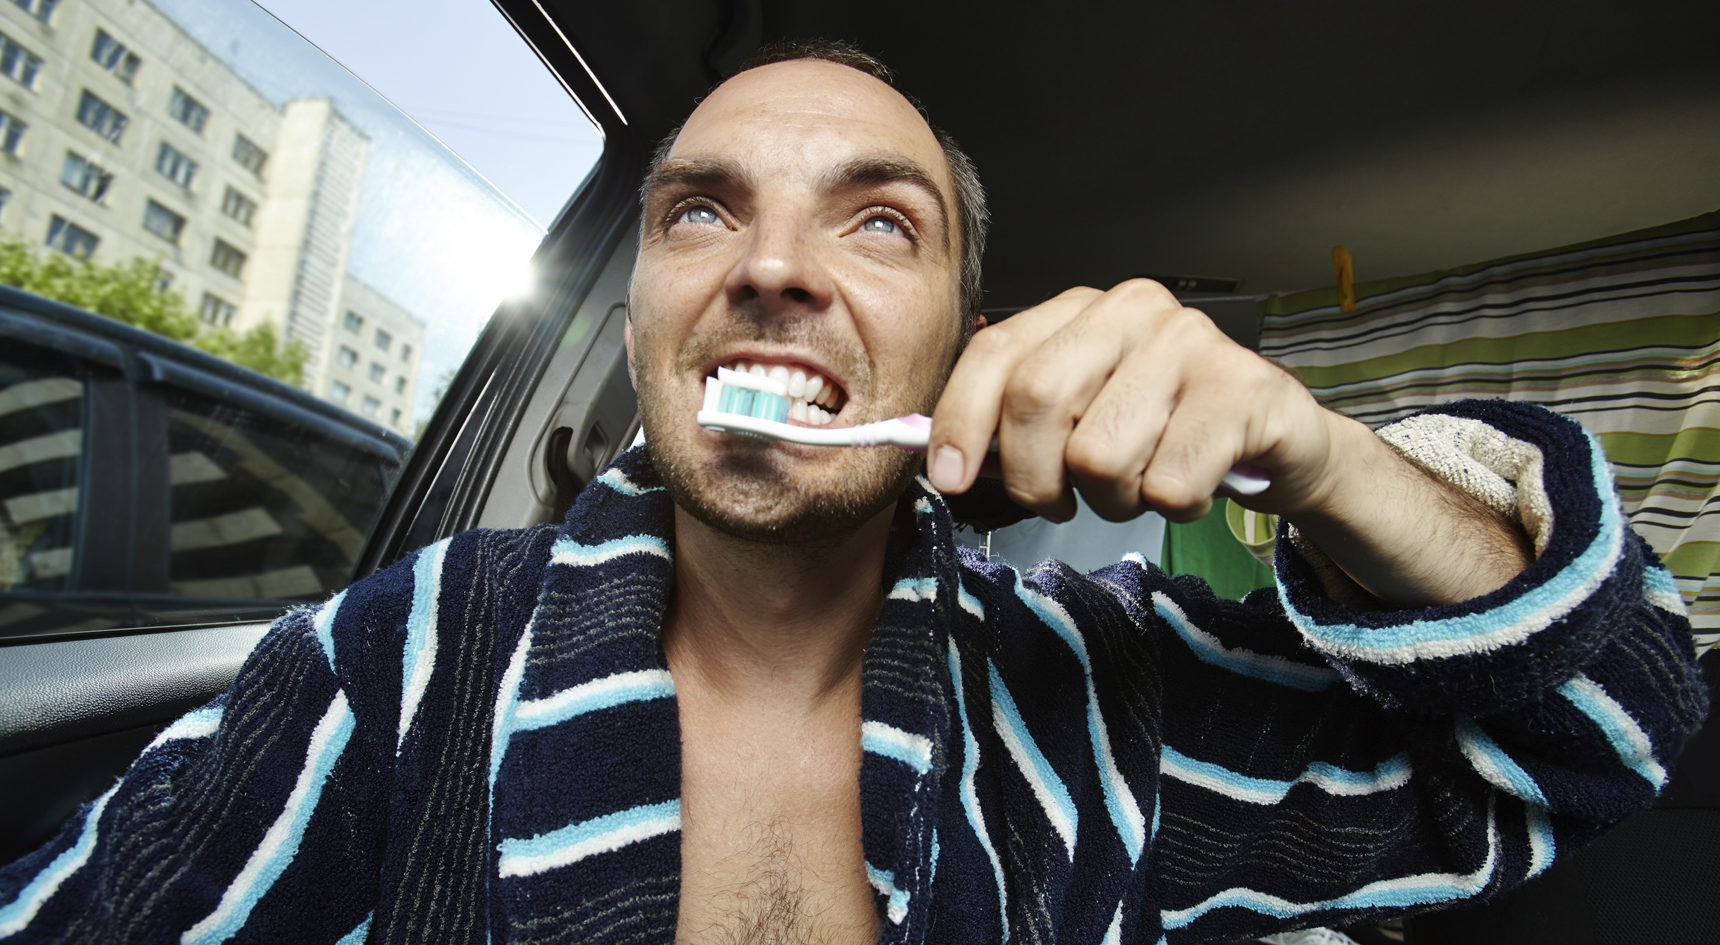 Man brushing his teeth while driving.